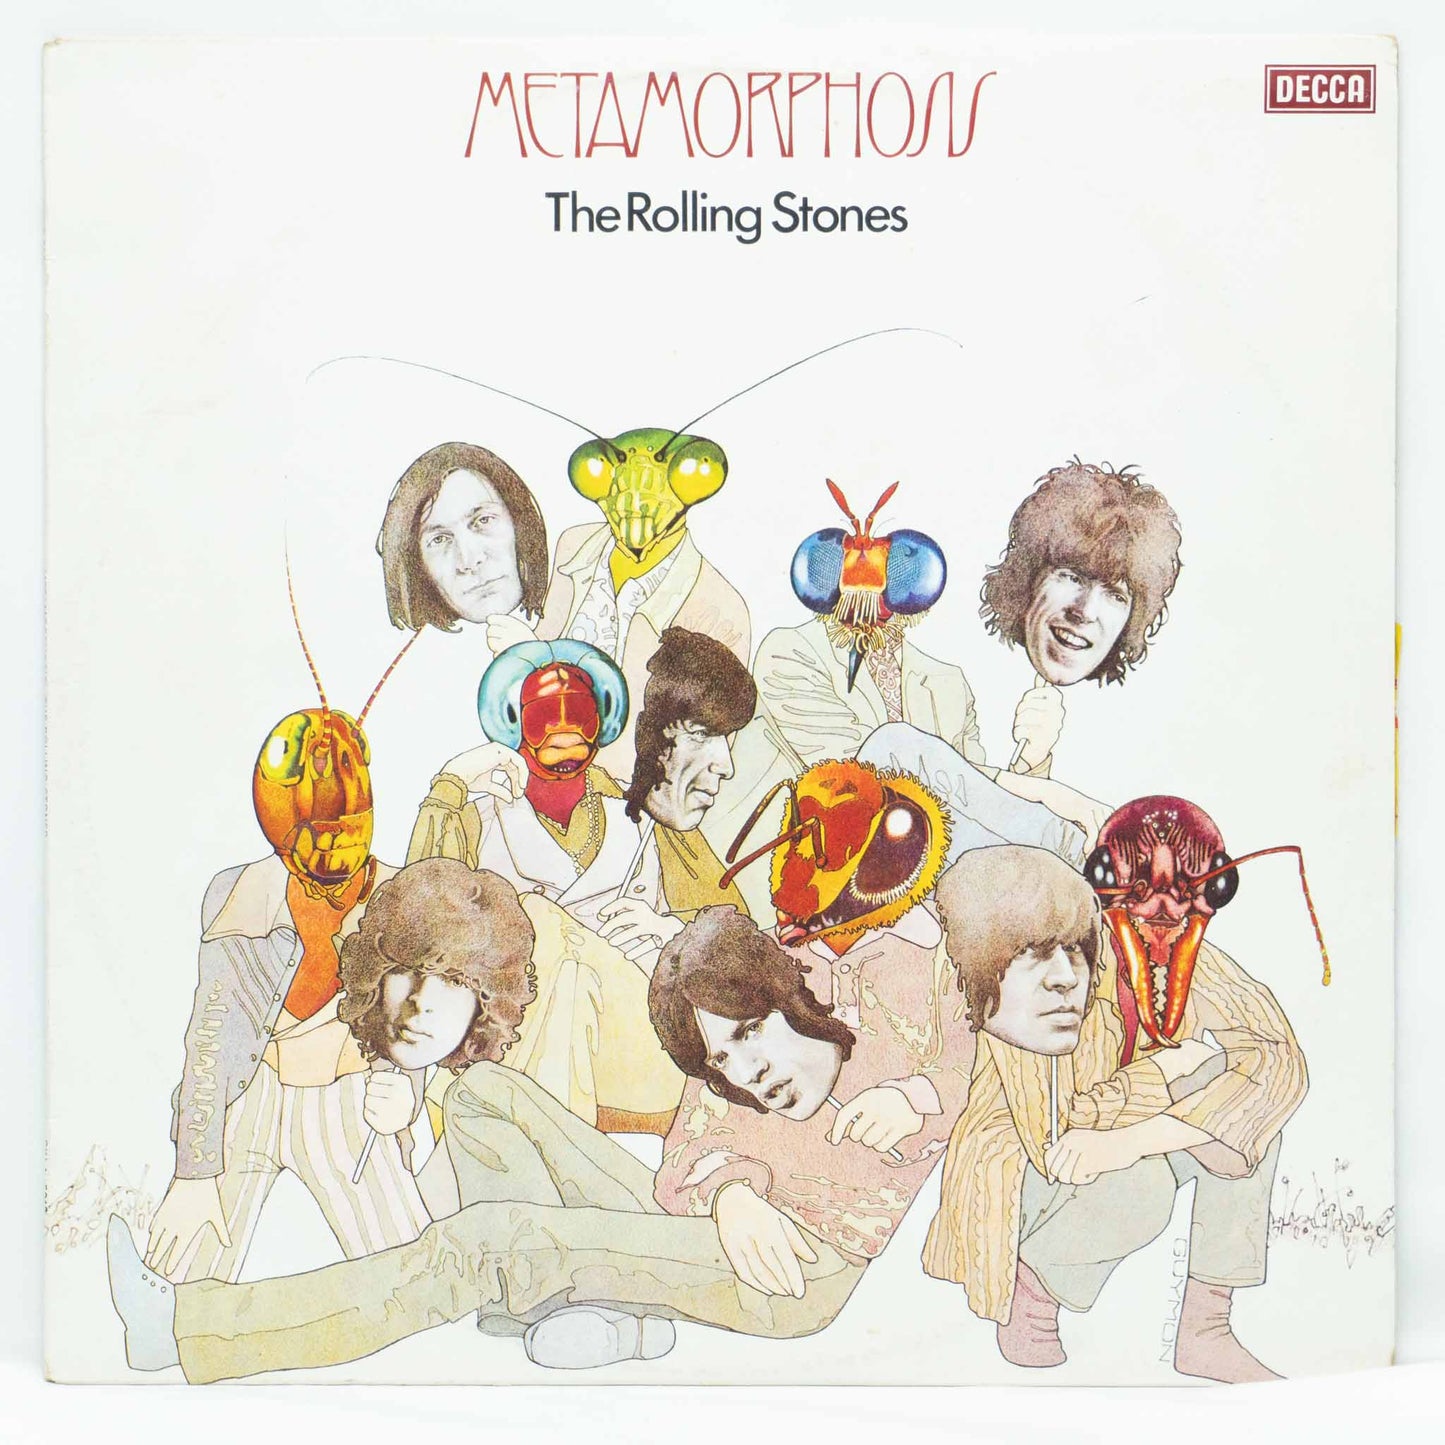 The Rolling Stones – Metamorphosis